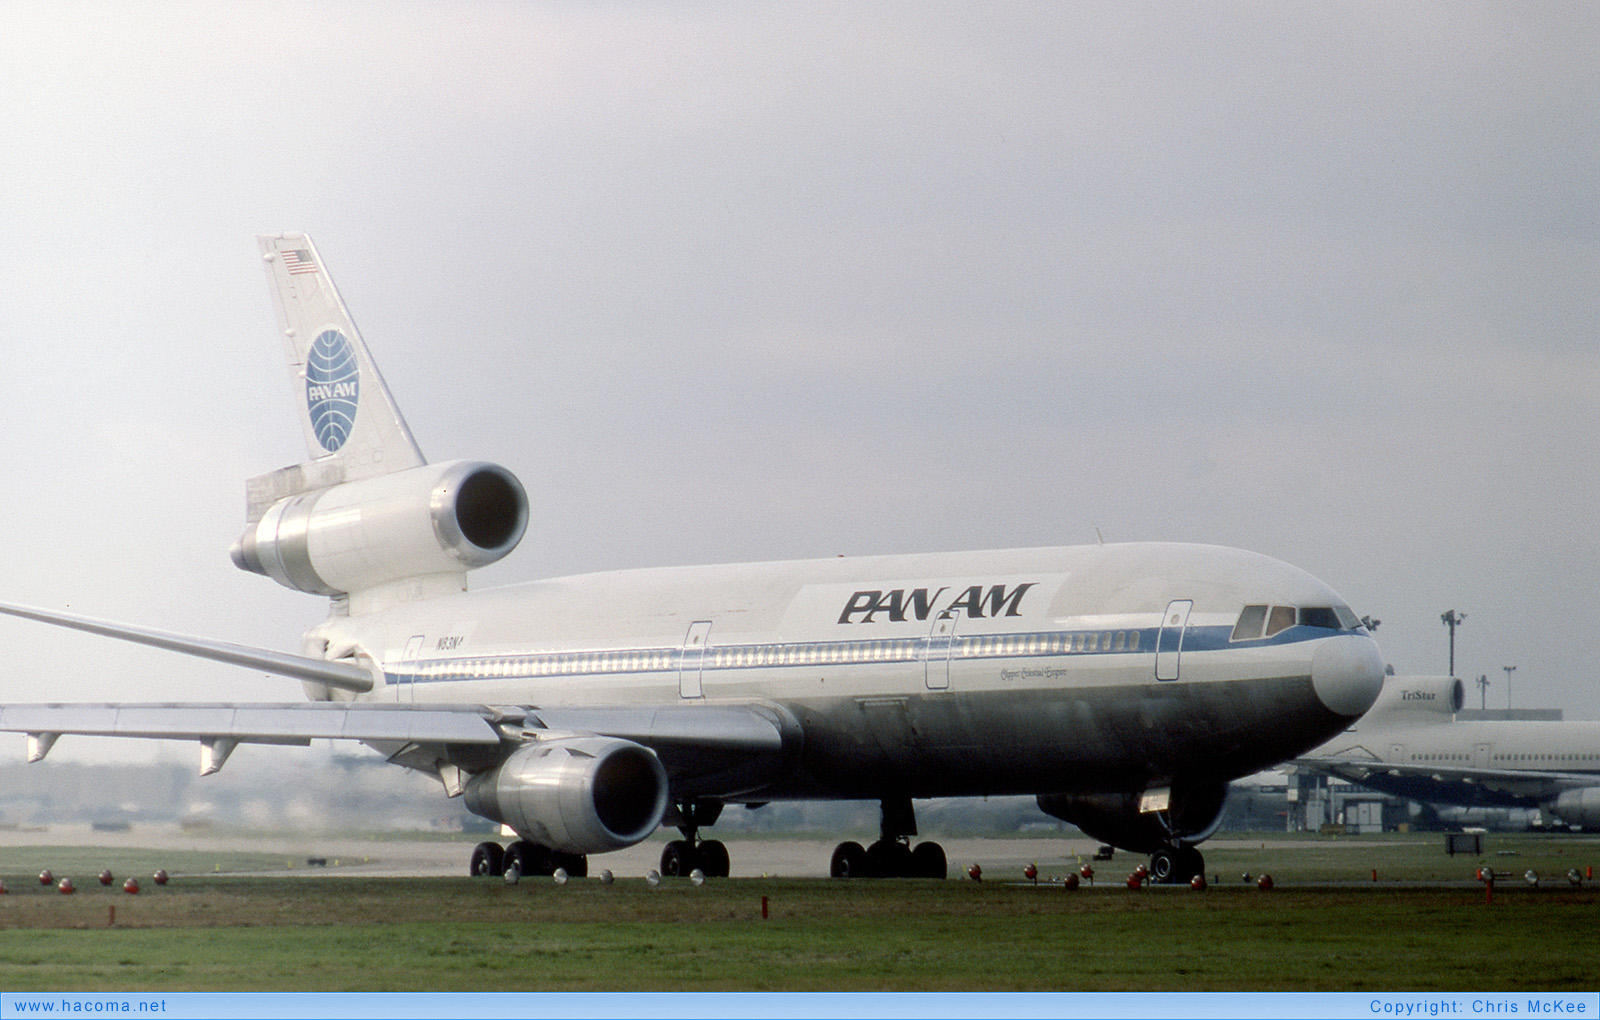 Photo of N83NA - Pan Am Clipper Celestial Empire - London Heathrow Airport - Jan 24, 1981